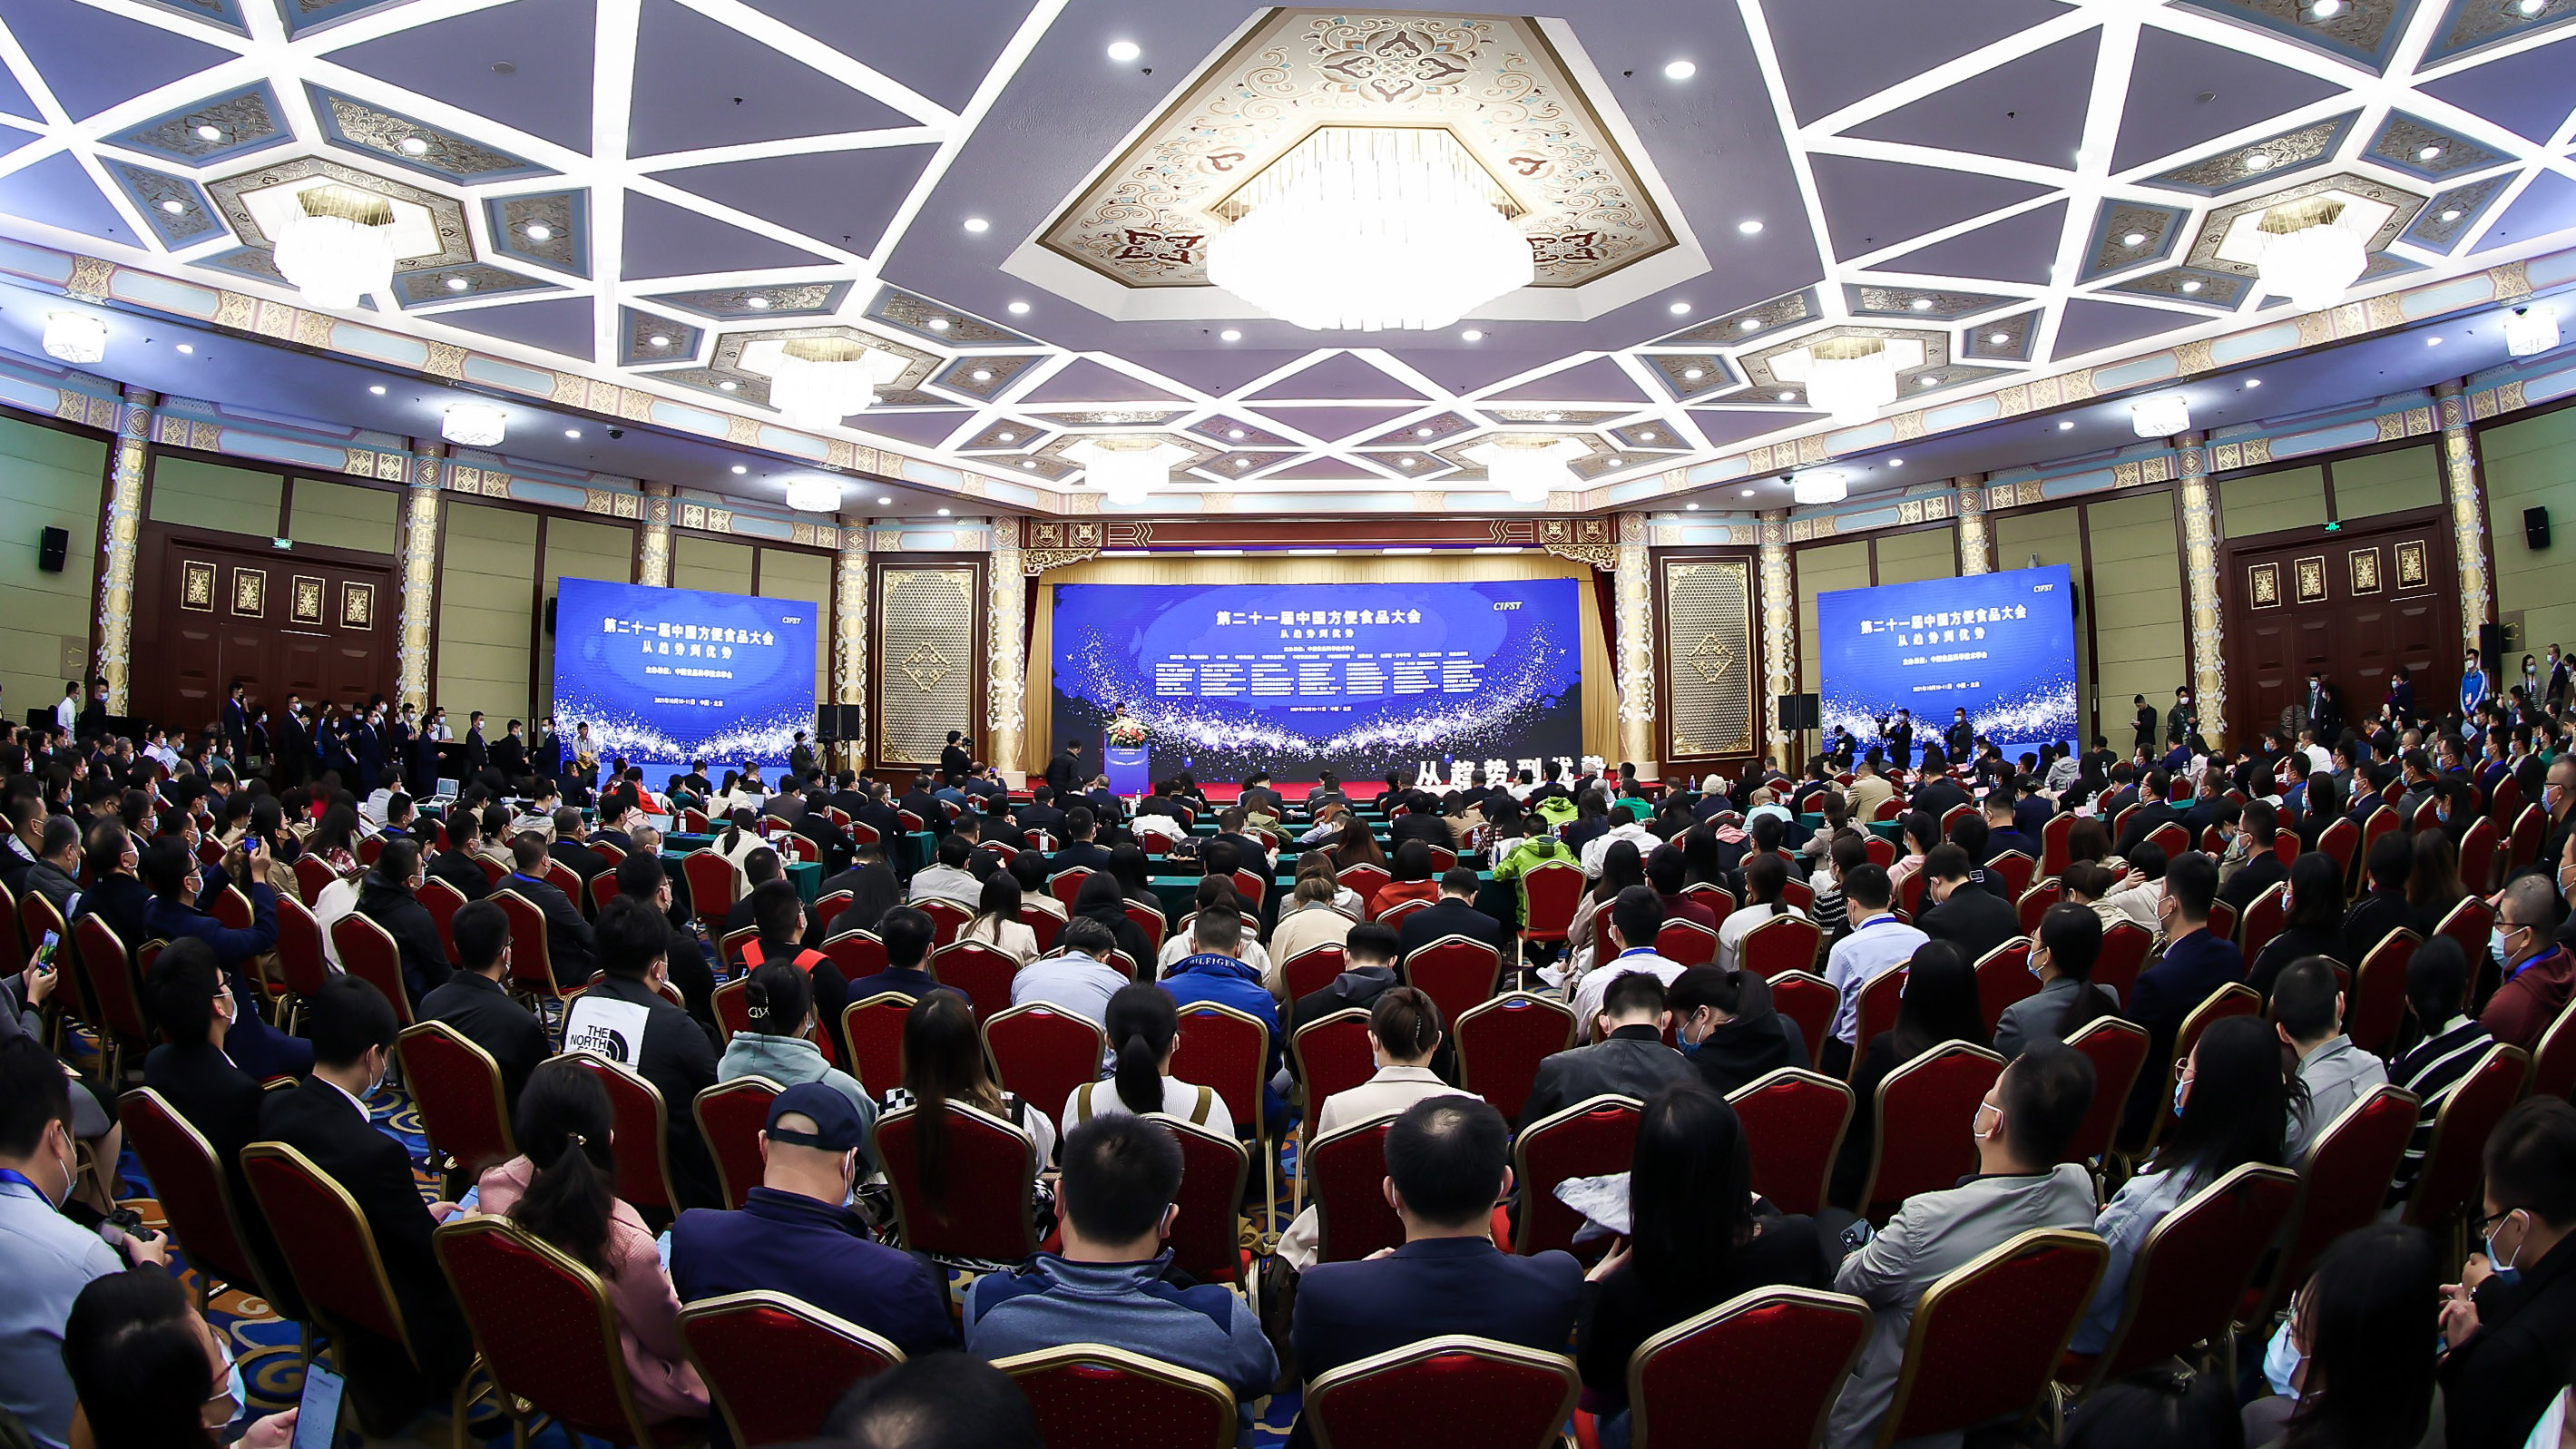 方便食品行业成为中国食品工业的上扬之力 第二十一届中国方便食品大会在京召开